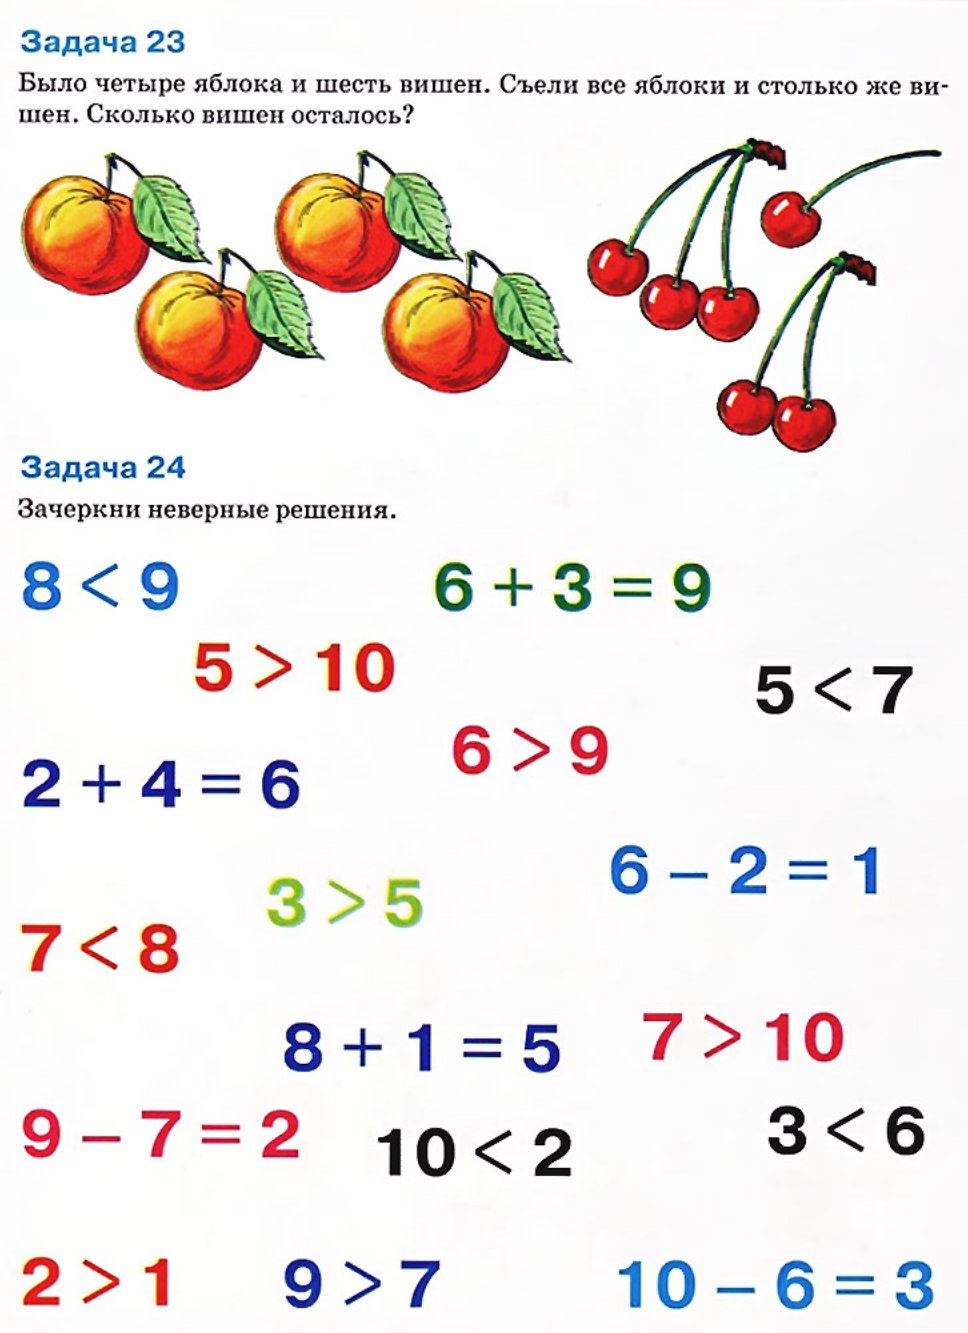 Математика 1 класс логические задачи с ответами. Логические задачи для дош. Задачки на логиау для детеф. Залачки на логику для детей. Задачачи по математике для дошкольников.